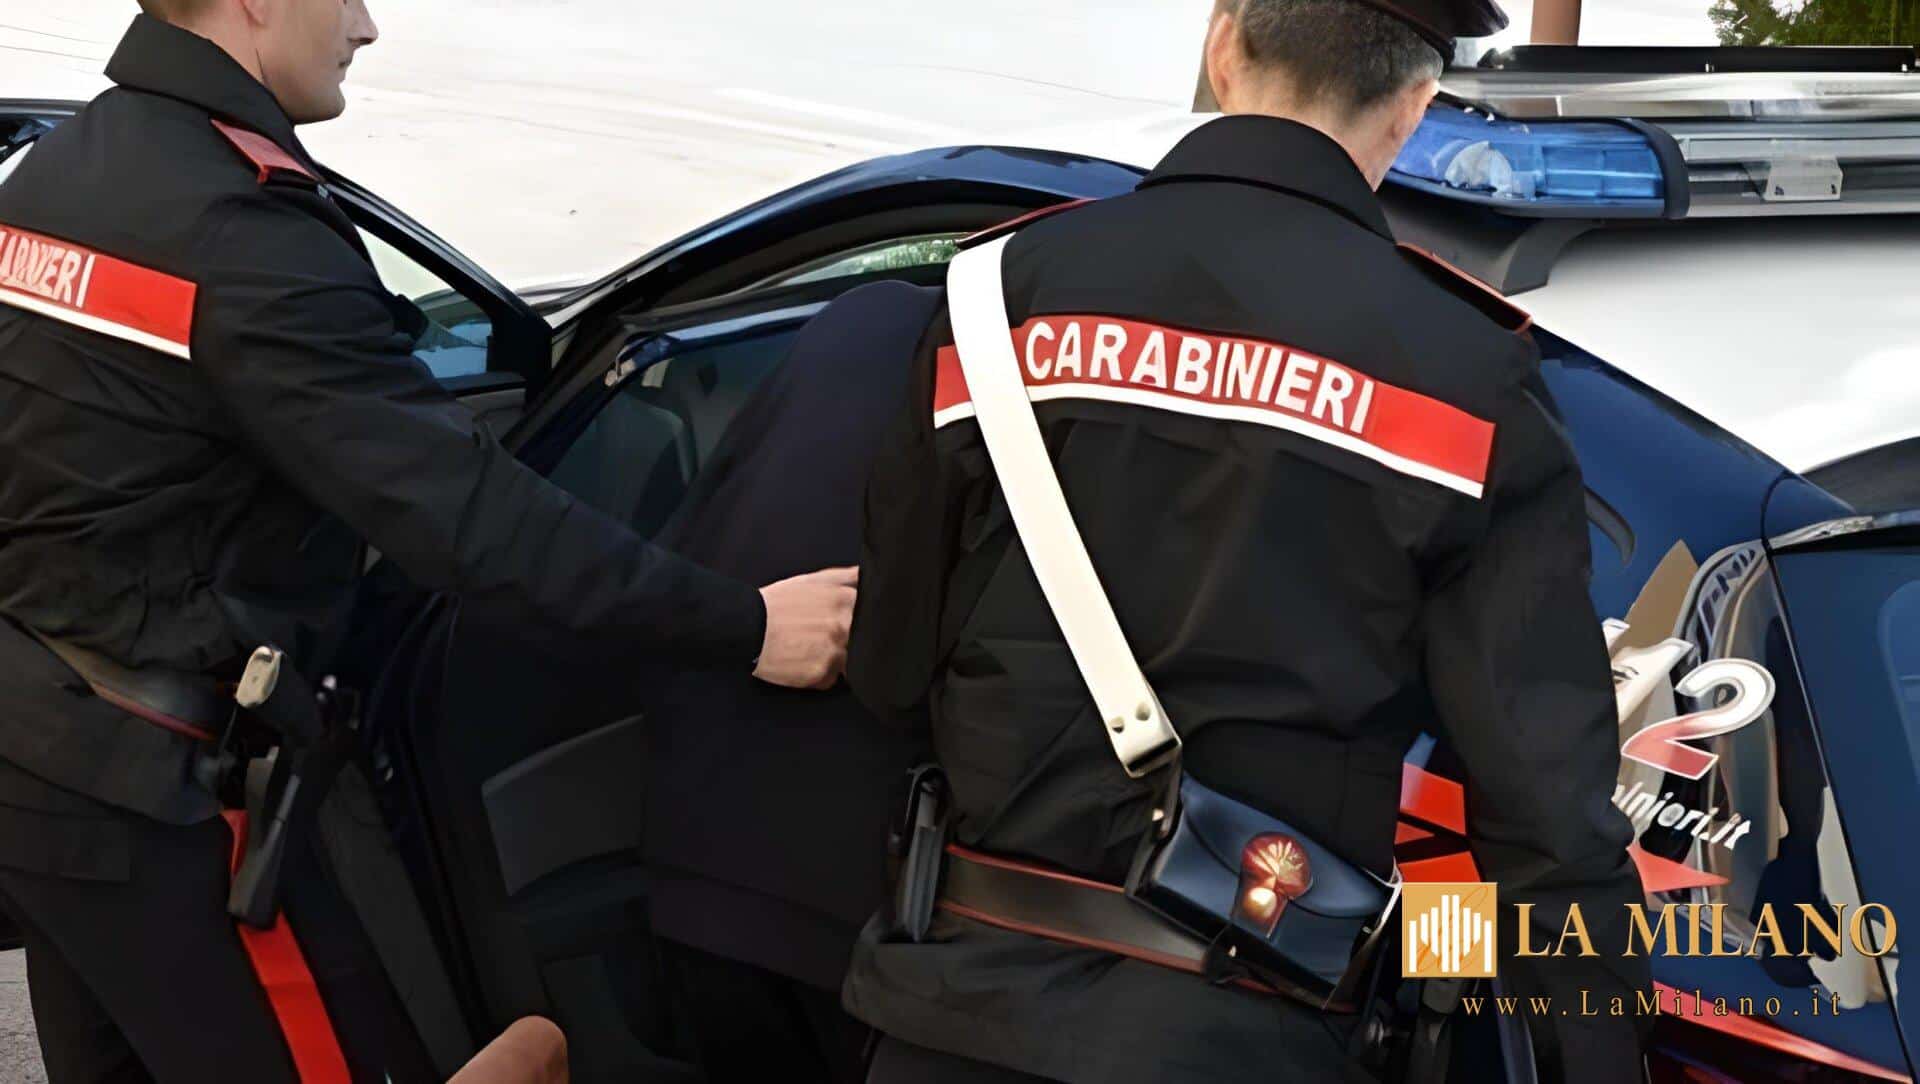 Crema, i Carabinieri hanno arrestato un uomo: era in affidamento in prova, ma ha violato le prescrizioni. Per lui l’accompagnamento in carcere.